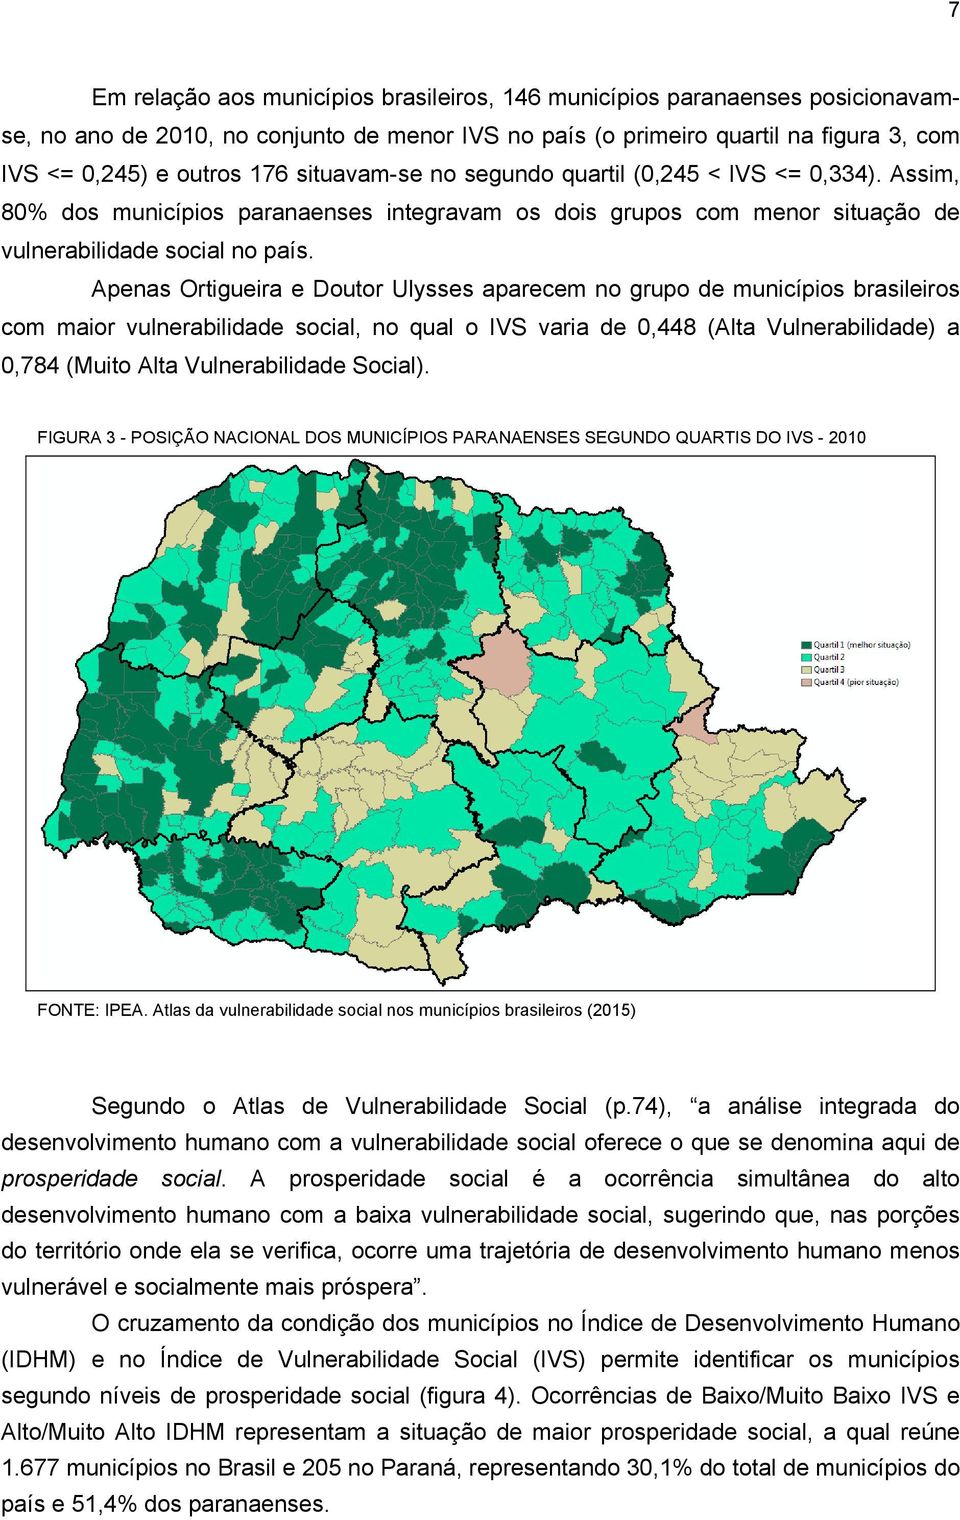 Apenas Ortigueira e Doutor Ulysses aparecem no grupo de municípios brasileiros com maior vulnerabilidade social, no qual o IVS varia de 0,448 (Alta Vulnerabilidade) a 0,784 (Muito Alta